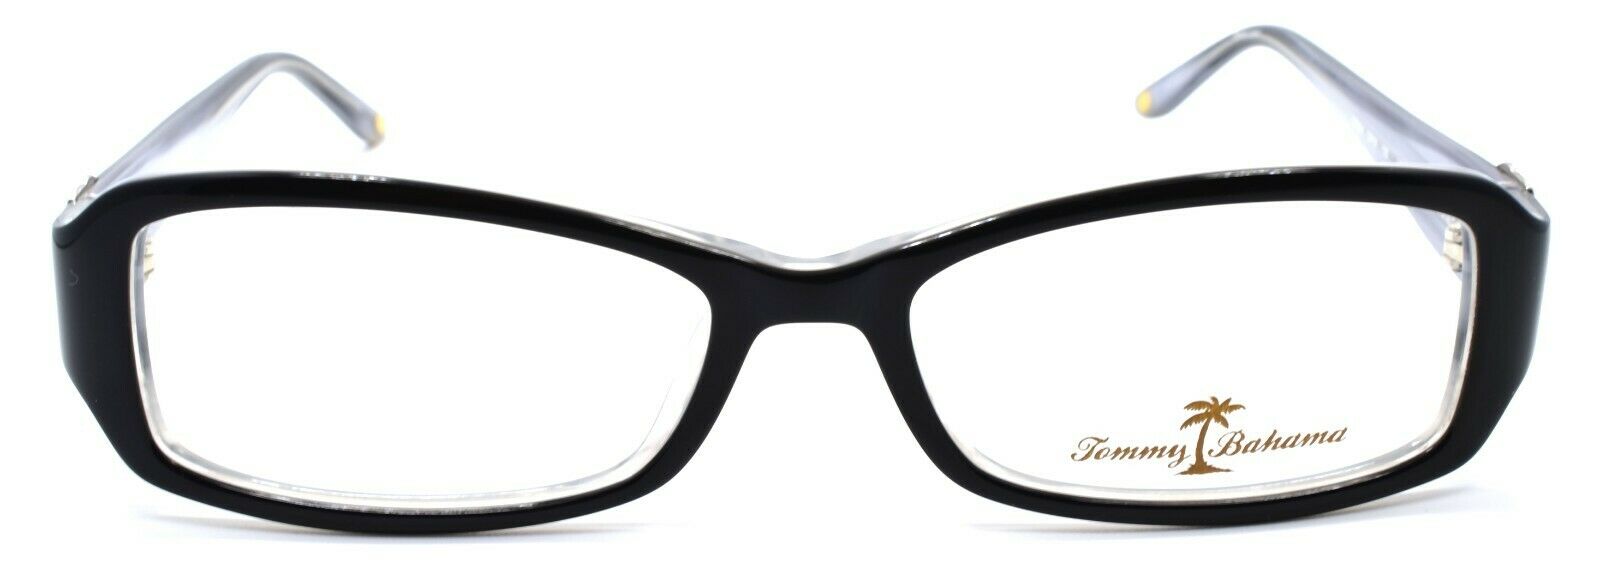 2-Tommy Bahama TB5004 003 Women's Eyeglasses Frames 51-16-135 Onyx Black-788678509543-IKSpecs